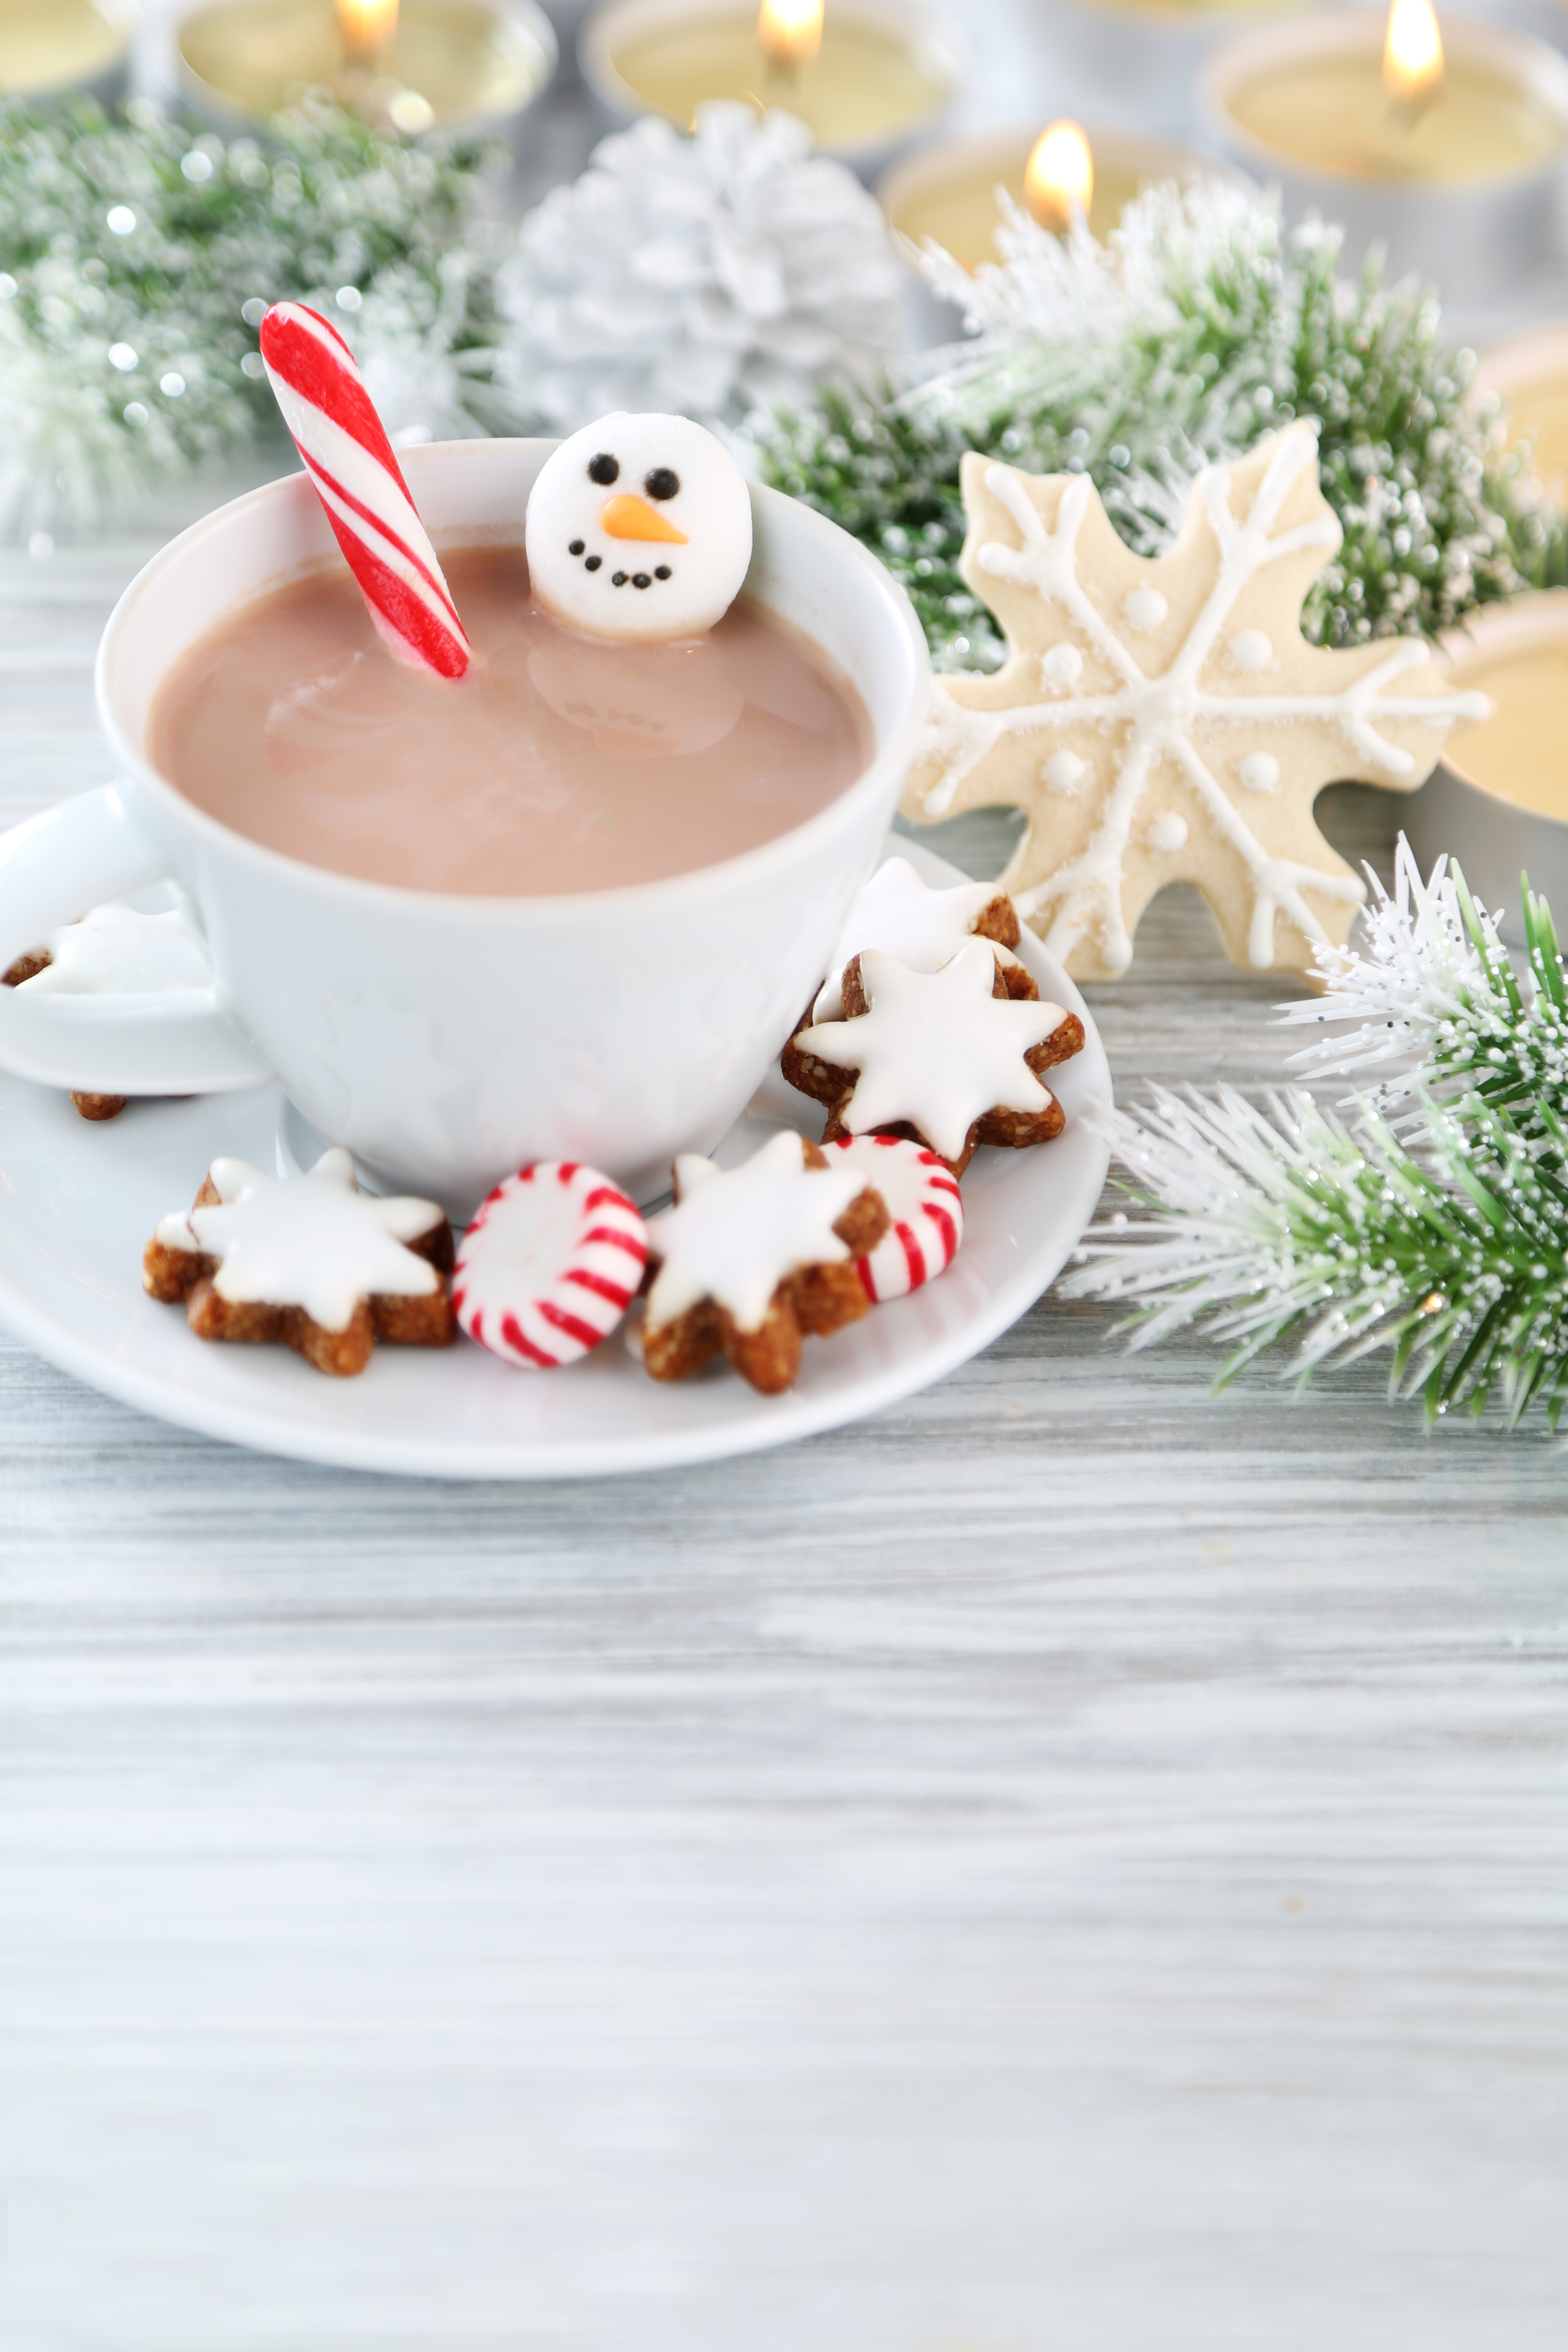 Chocolat chaud de Noël